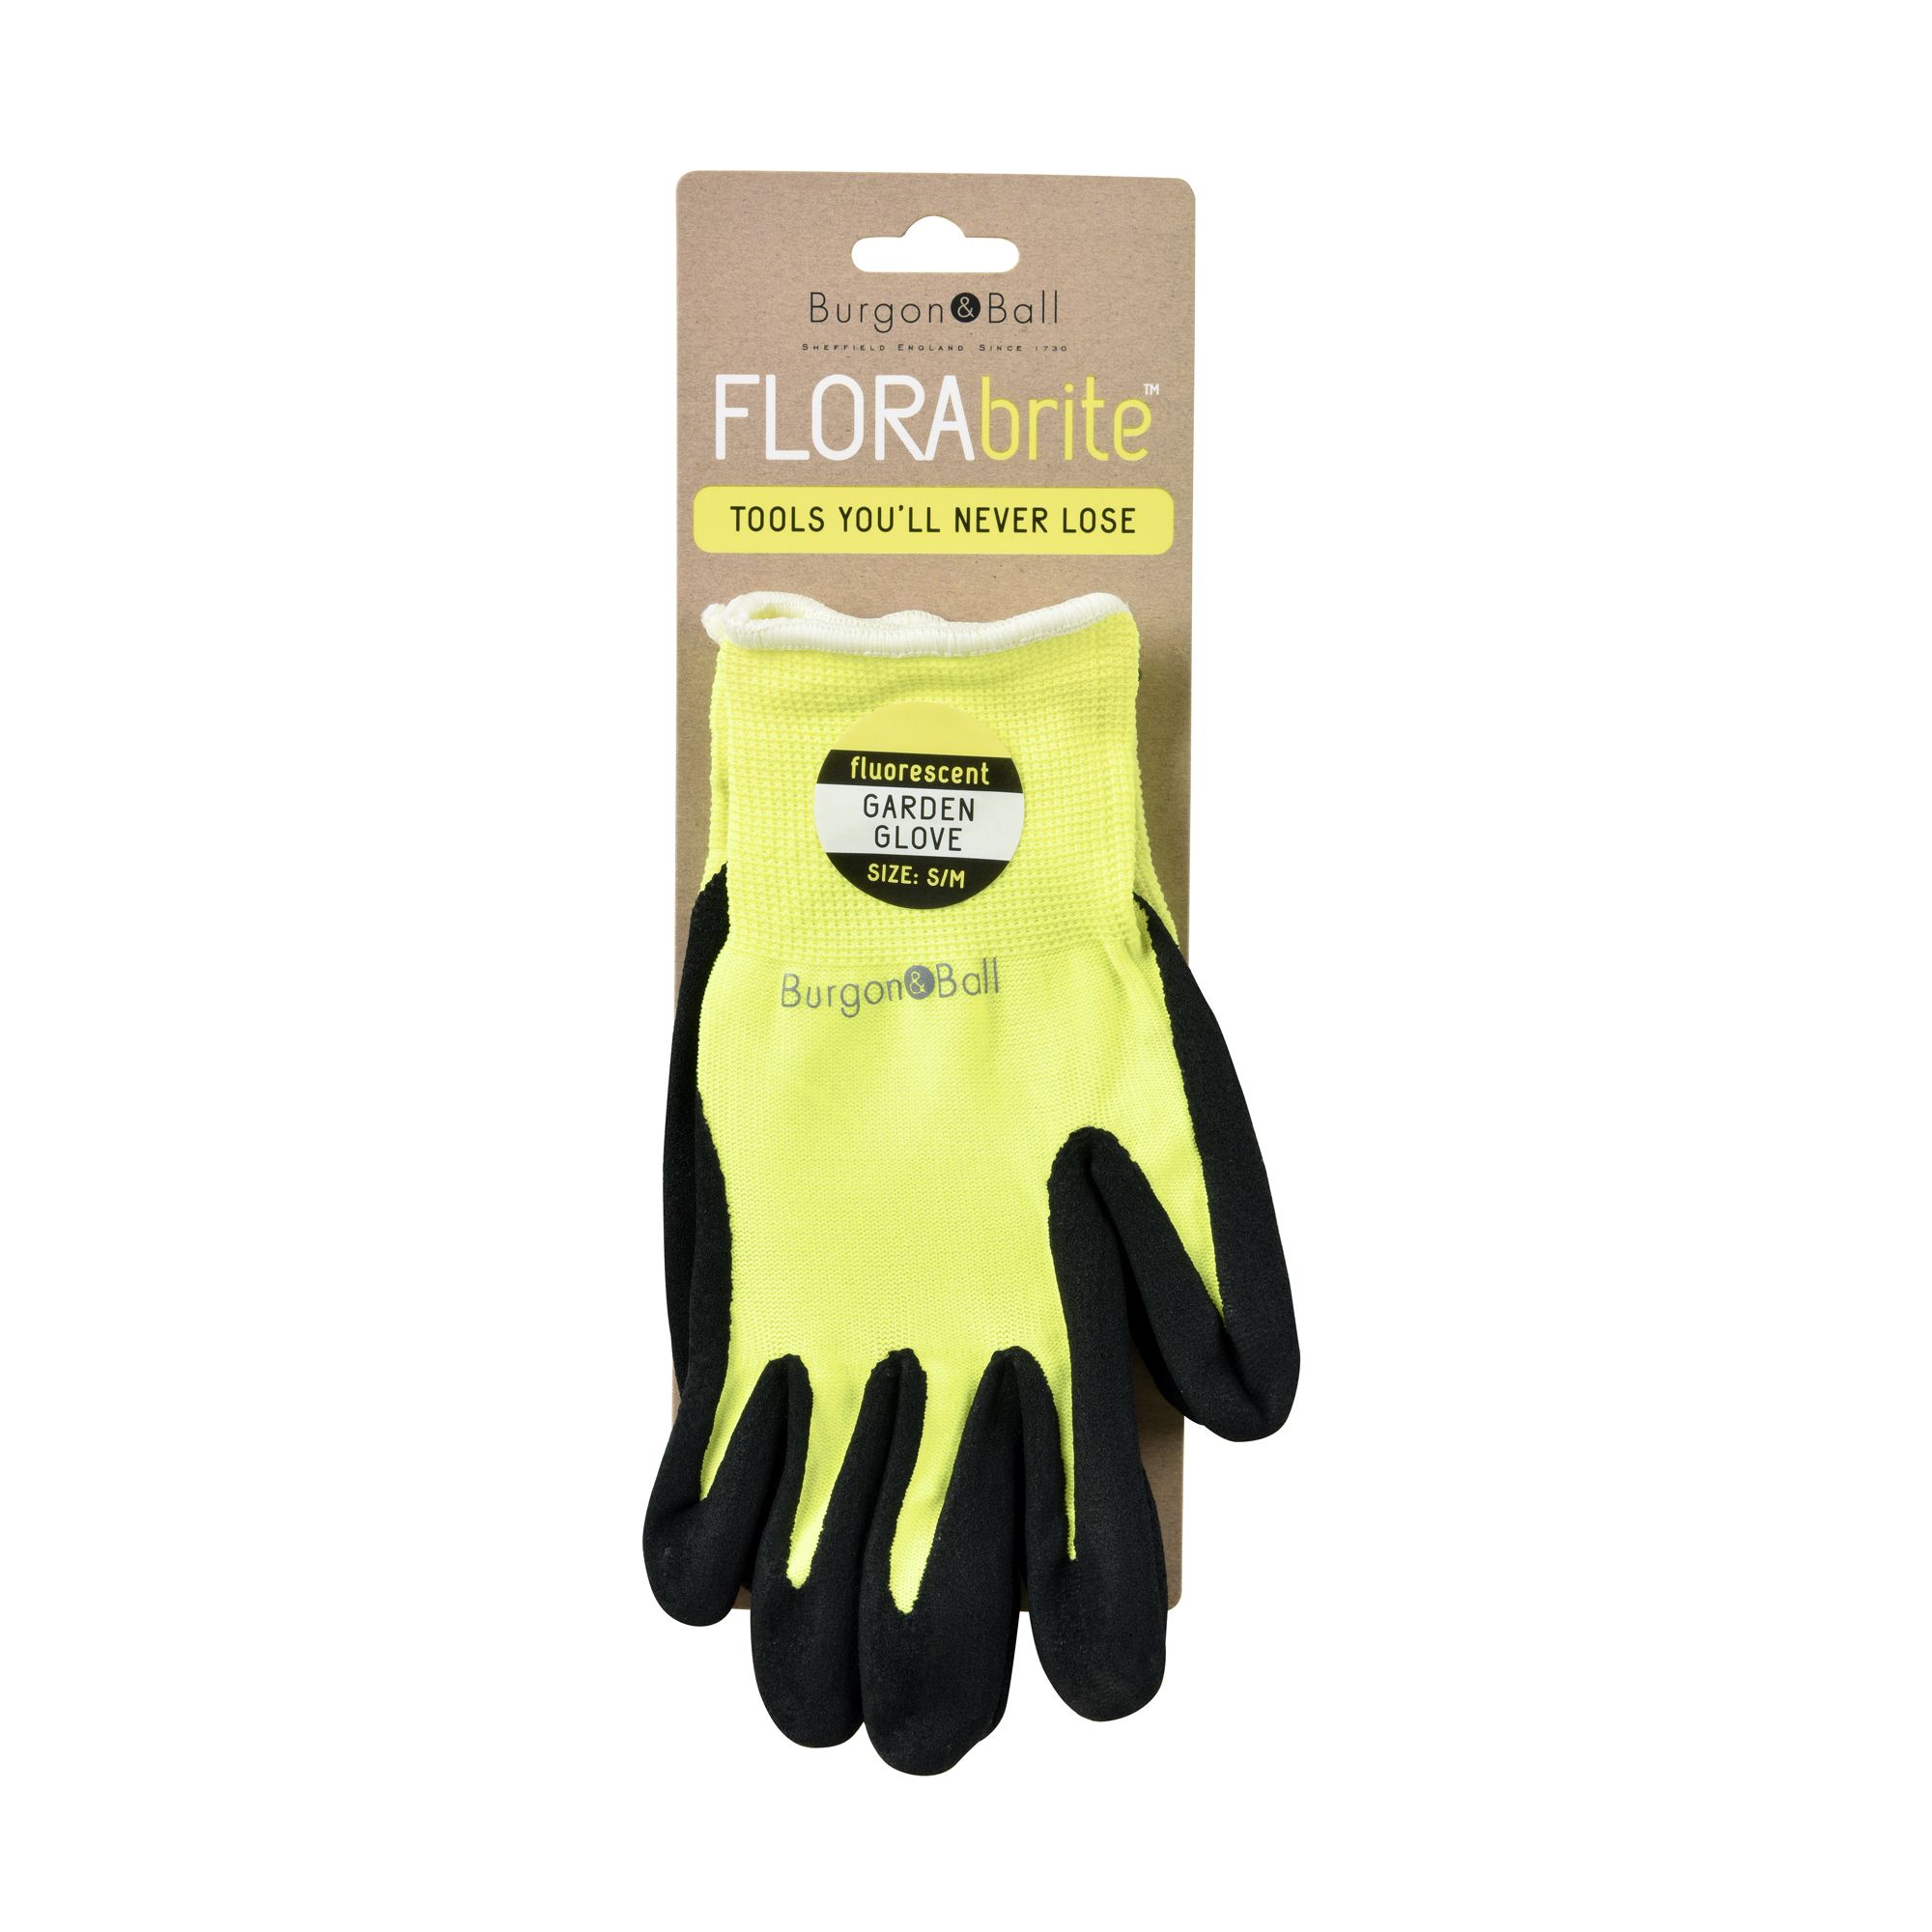 Burgon & Ball Flora brite Nylon Yellow Gardening gloves Small, Pair of 2